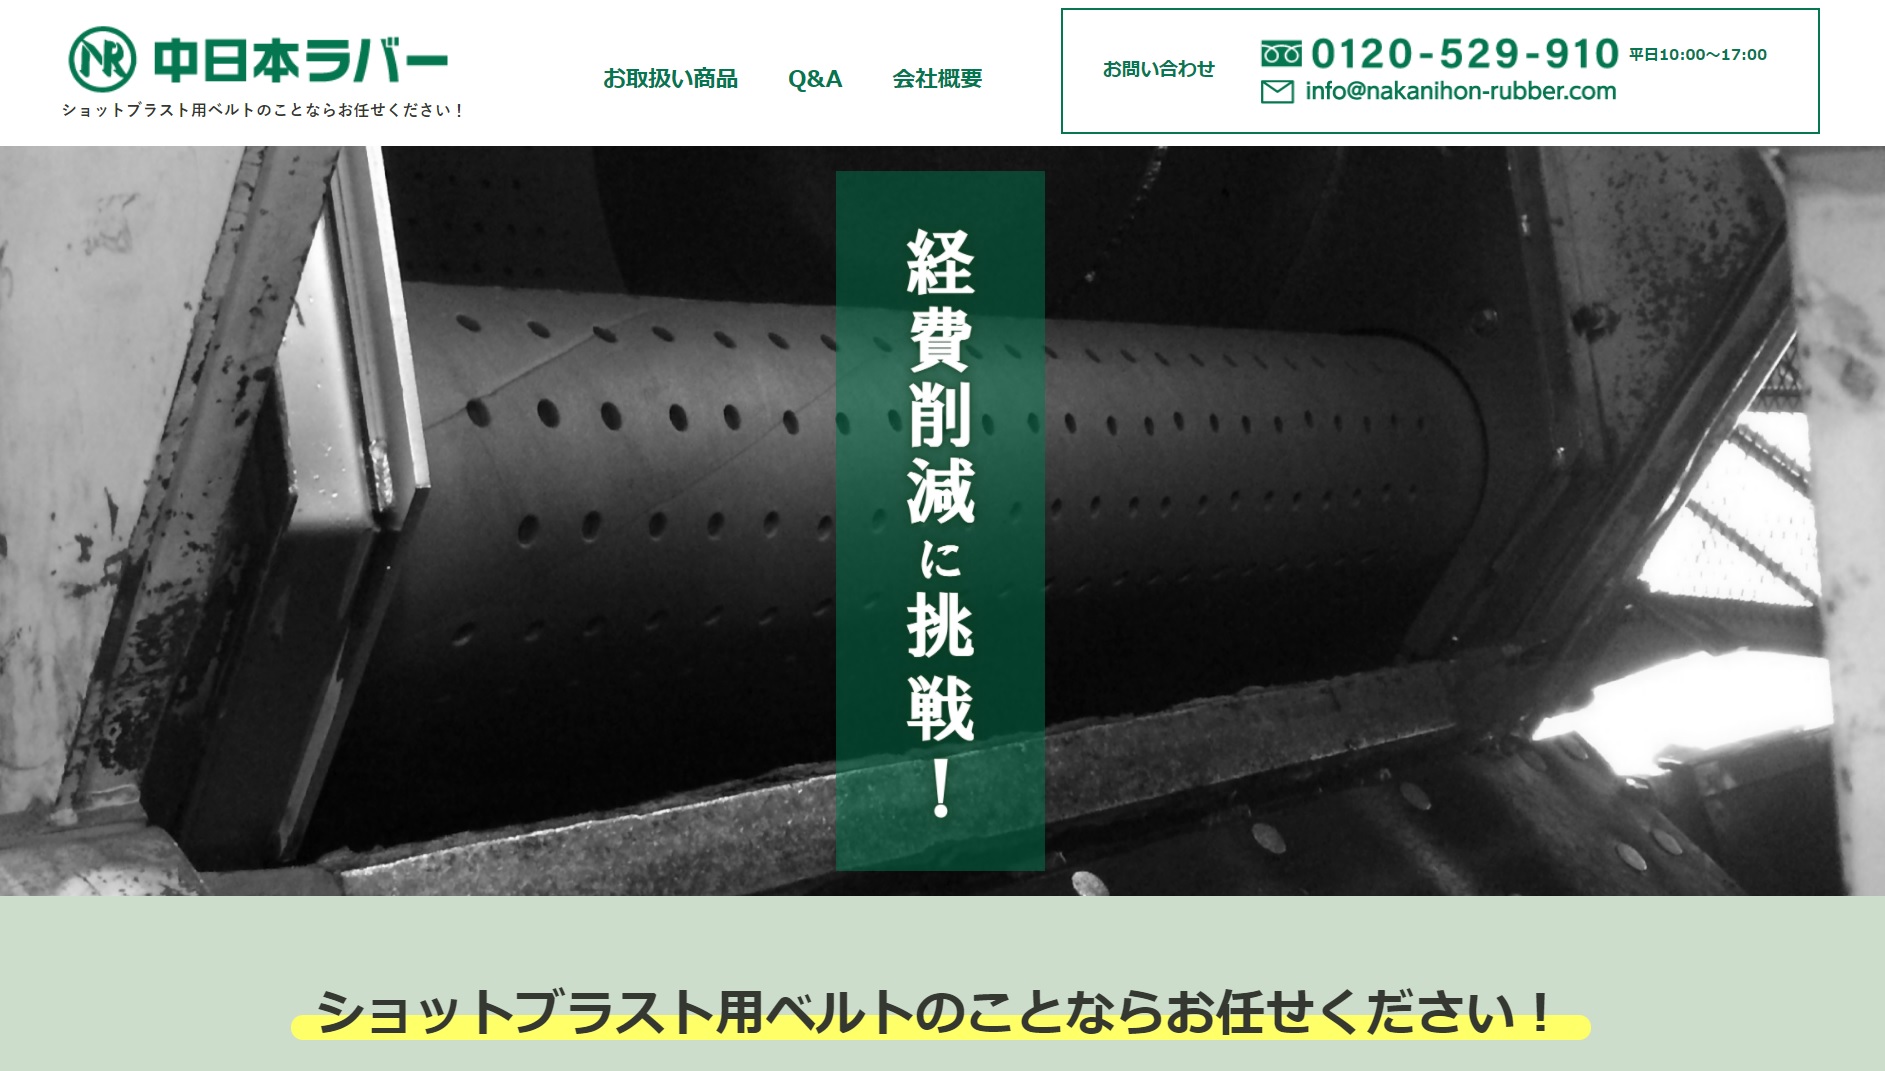 ショットブラストベルト制作の中日本ラバー様ホームページ作成させていただきました